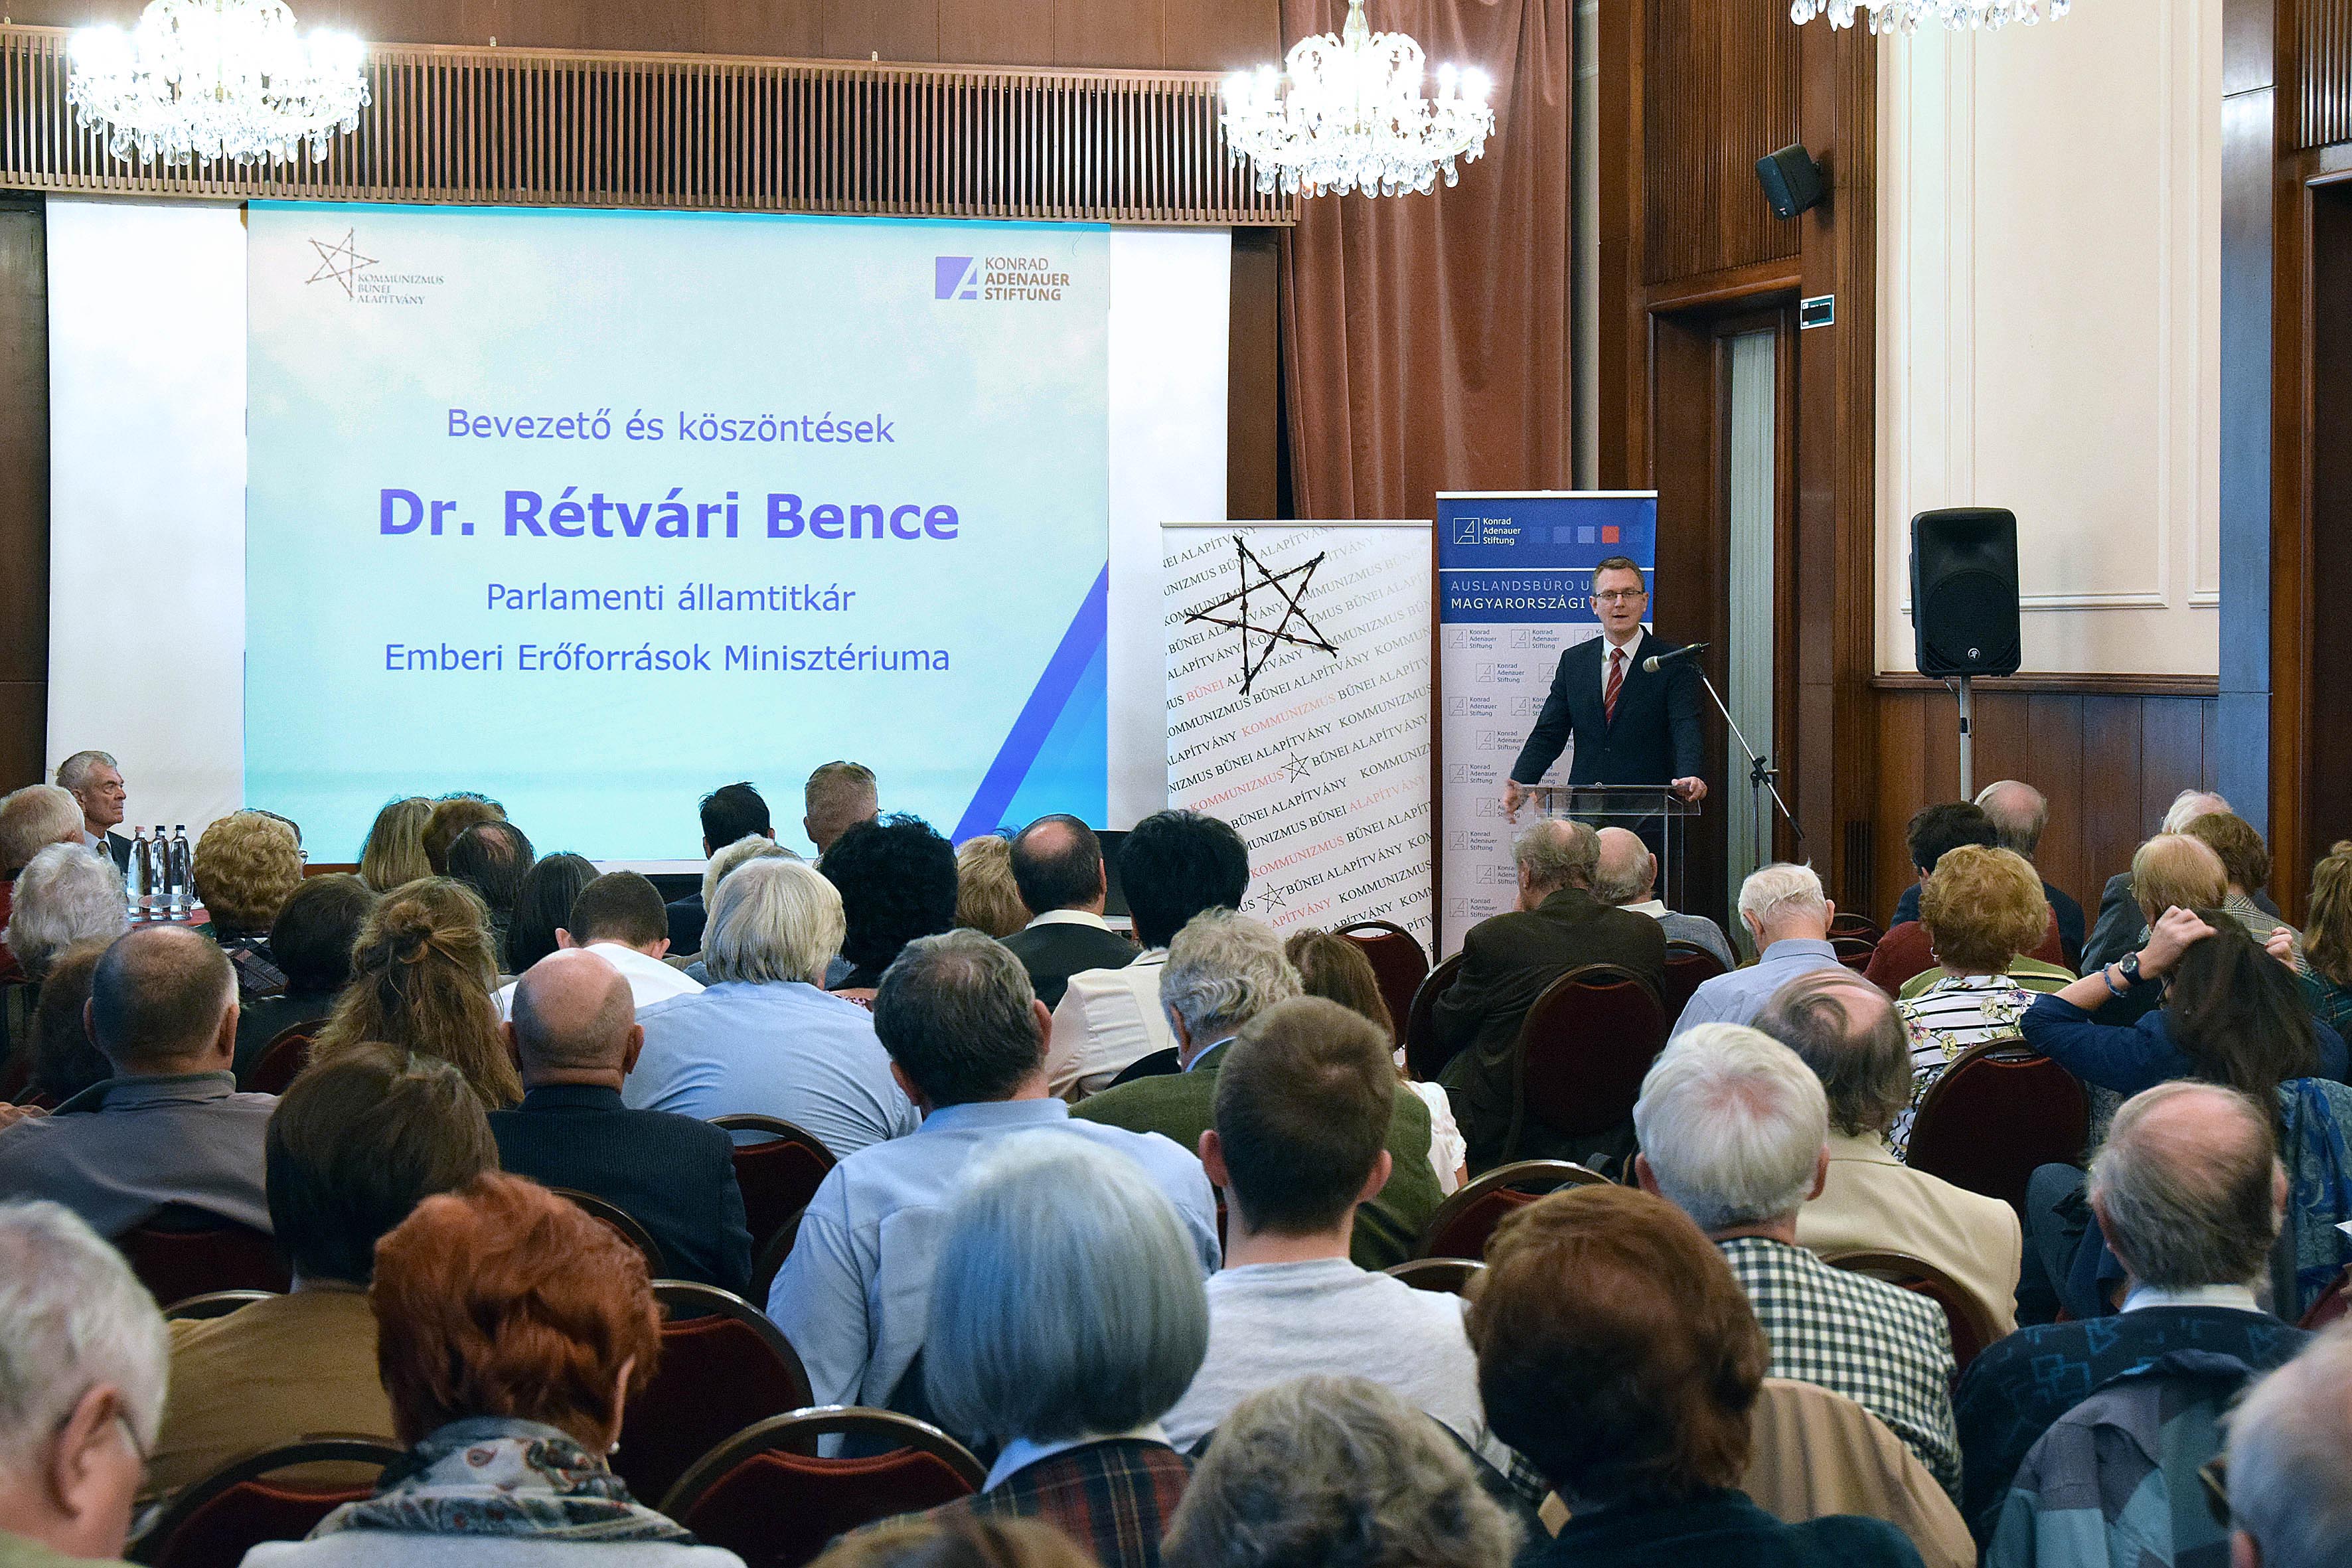 A hortobágyi kényszermunkatáborokkal kapcsolatos budapesti konferencia